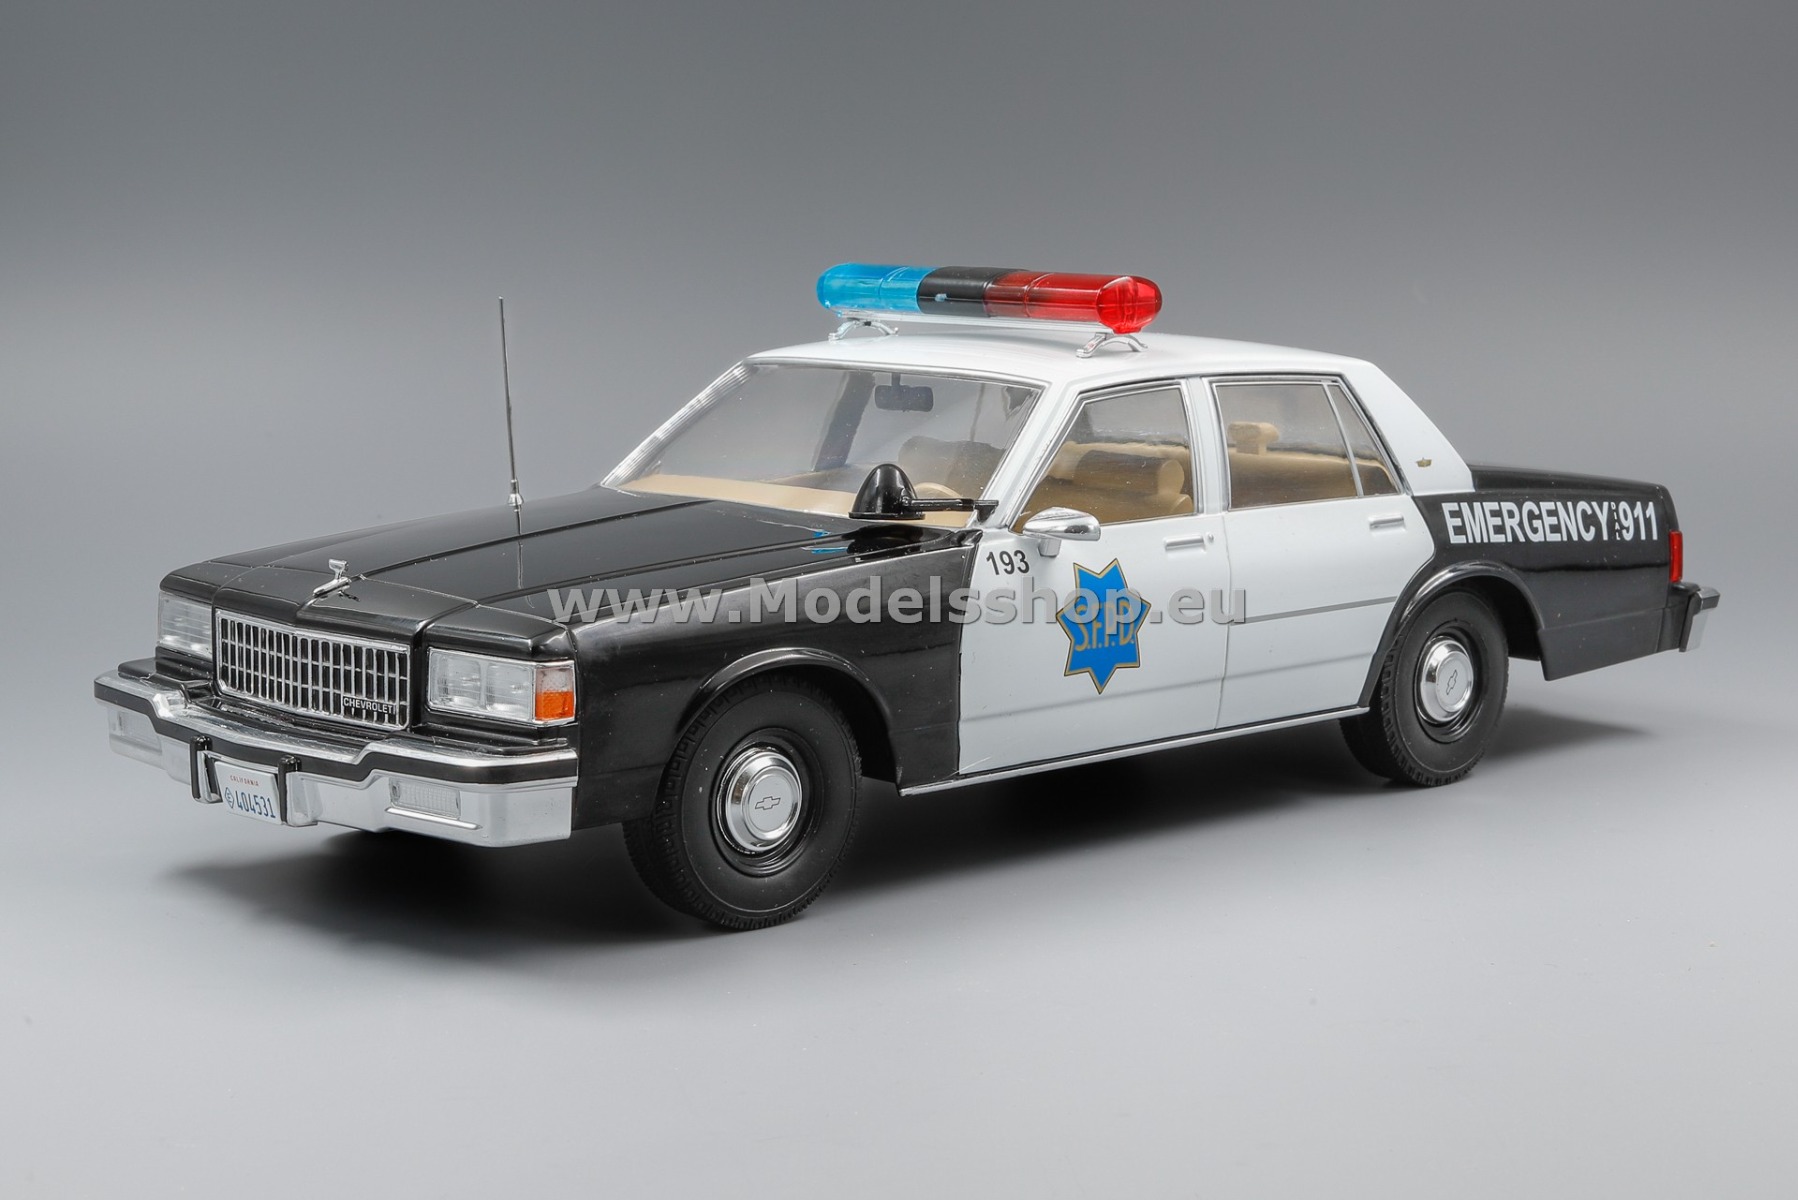 MCG 18389 Chevrolet Caprice, 1987 